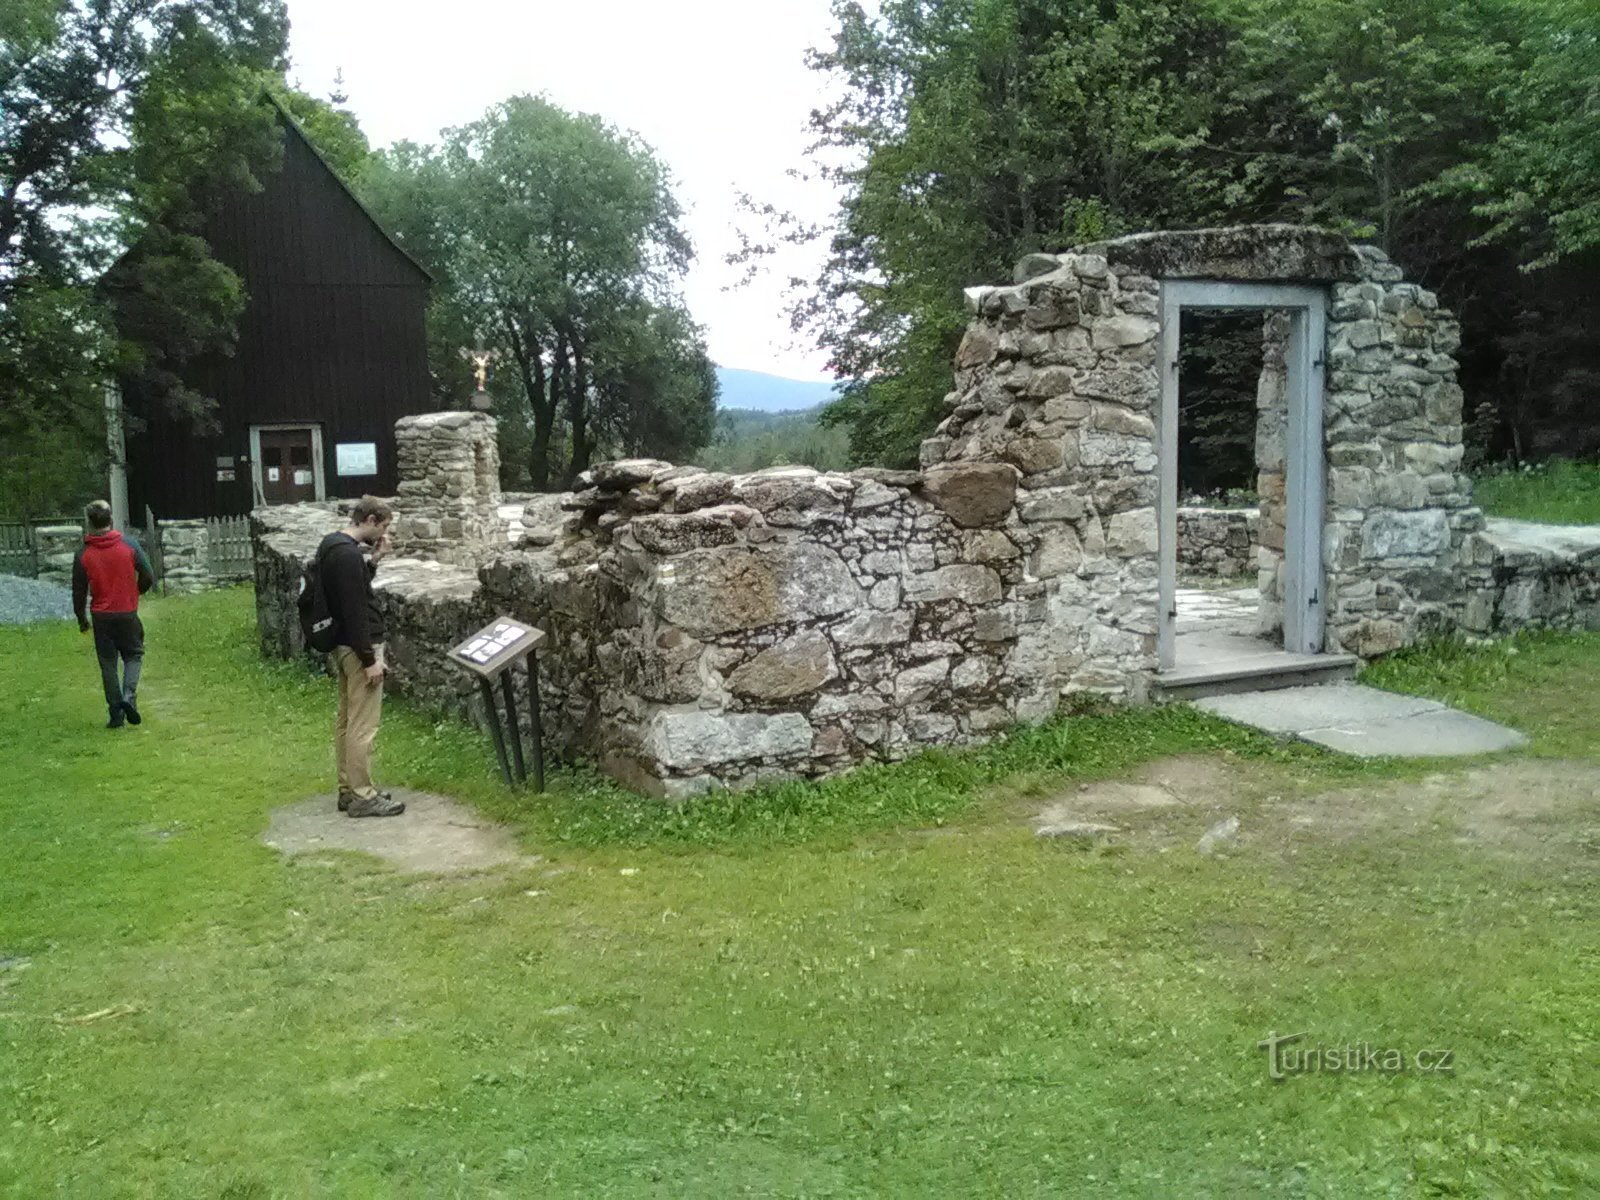 Überreste der Kirche